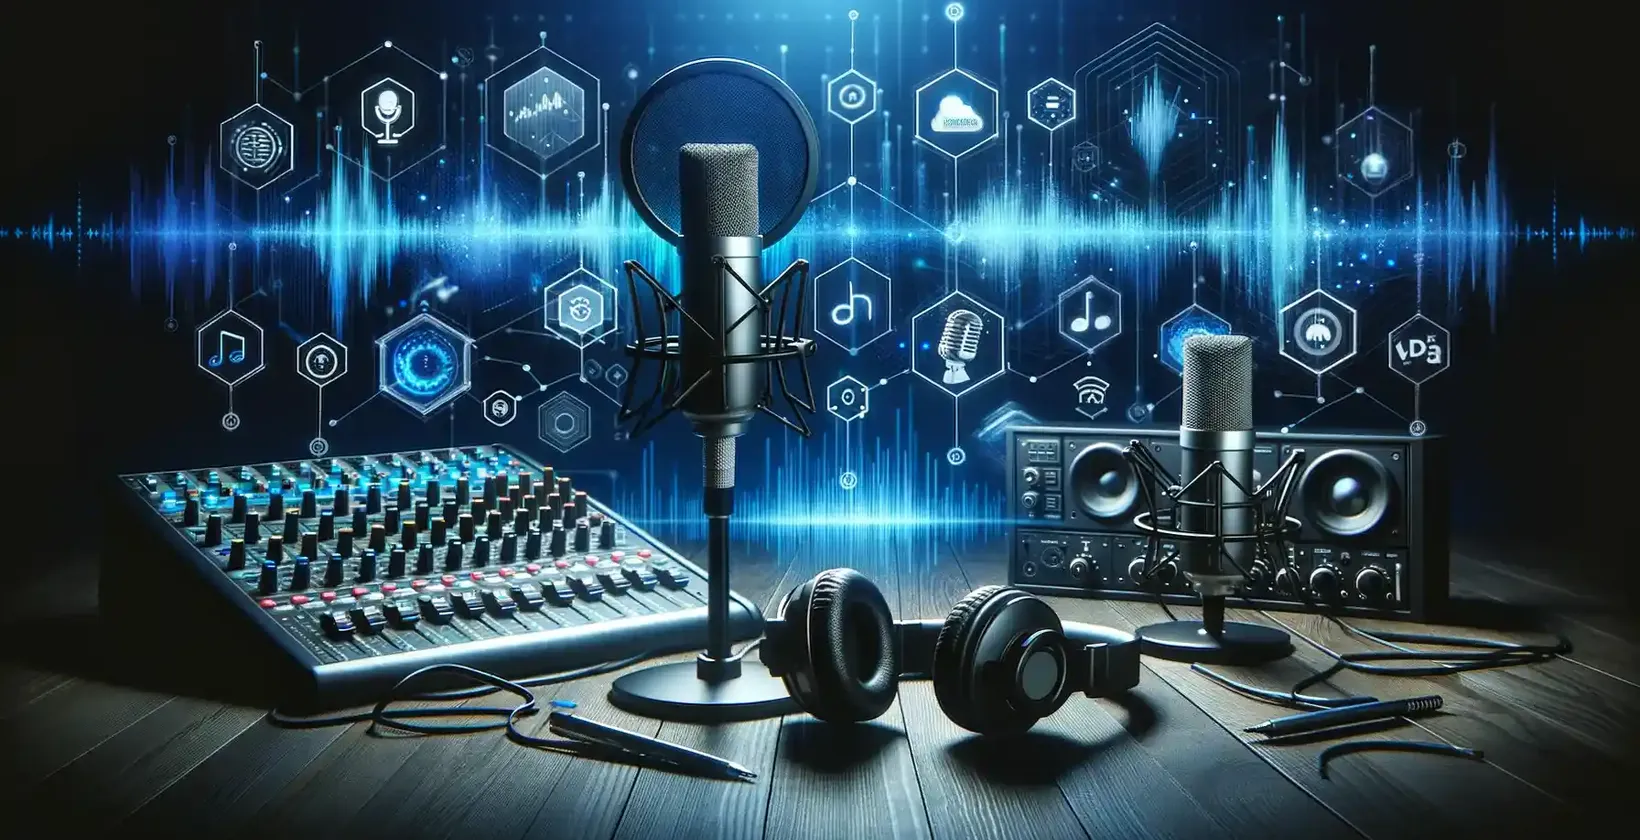 Diretriz de transcrição de podcast em 2023: Equipamento moderno de podcast com interface digital num fundo escuro.